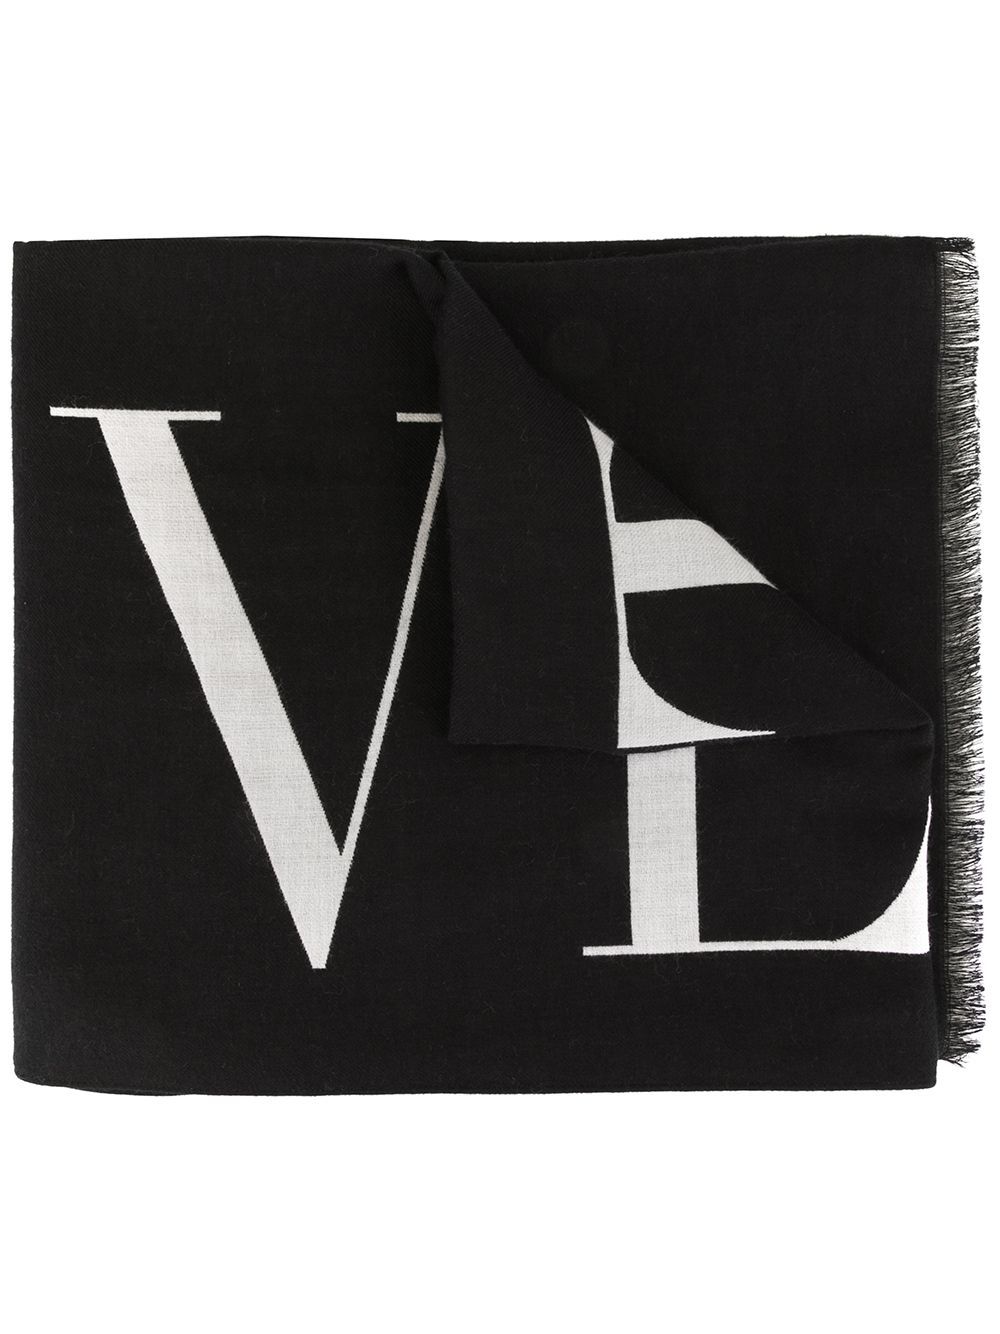 фото Valentino шарф valentino garavani с логотипом vltn